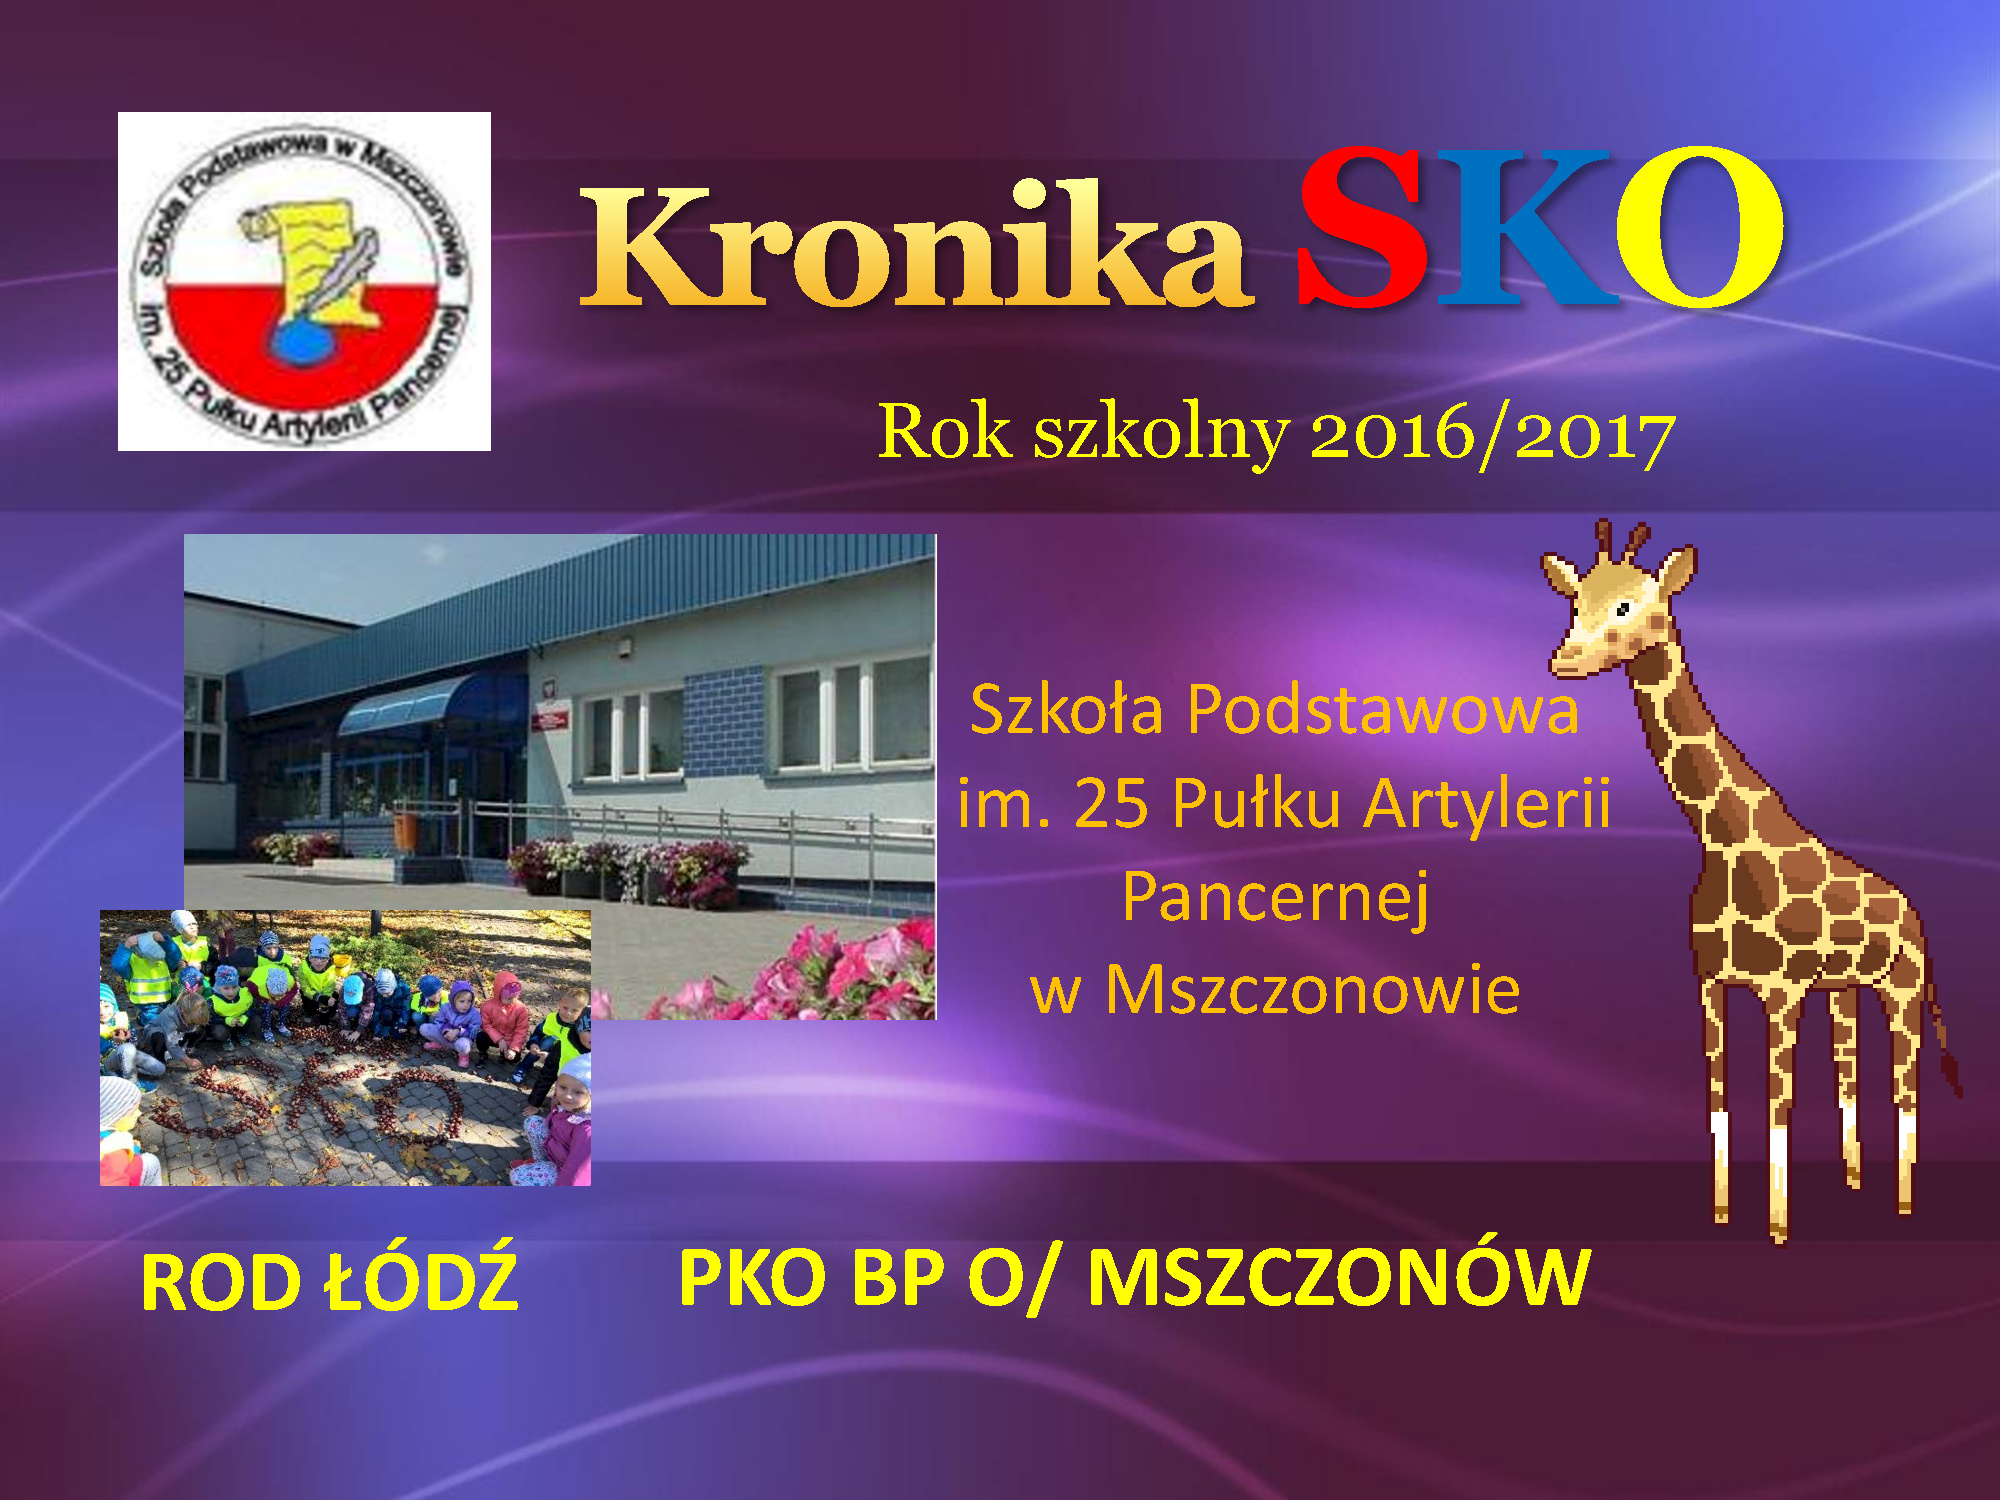 Szkoła Podstawowa im. 25 Pułku Artylerii Pancernej w Mszczonowie